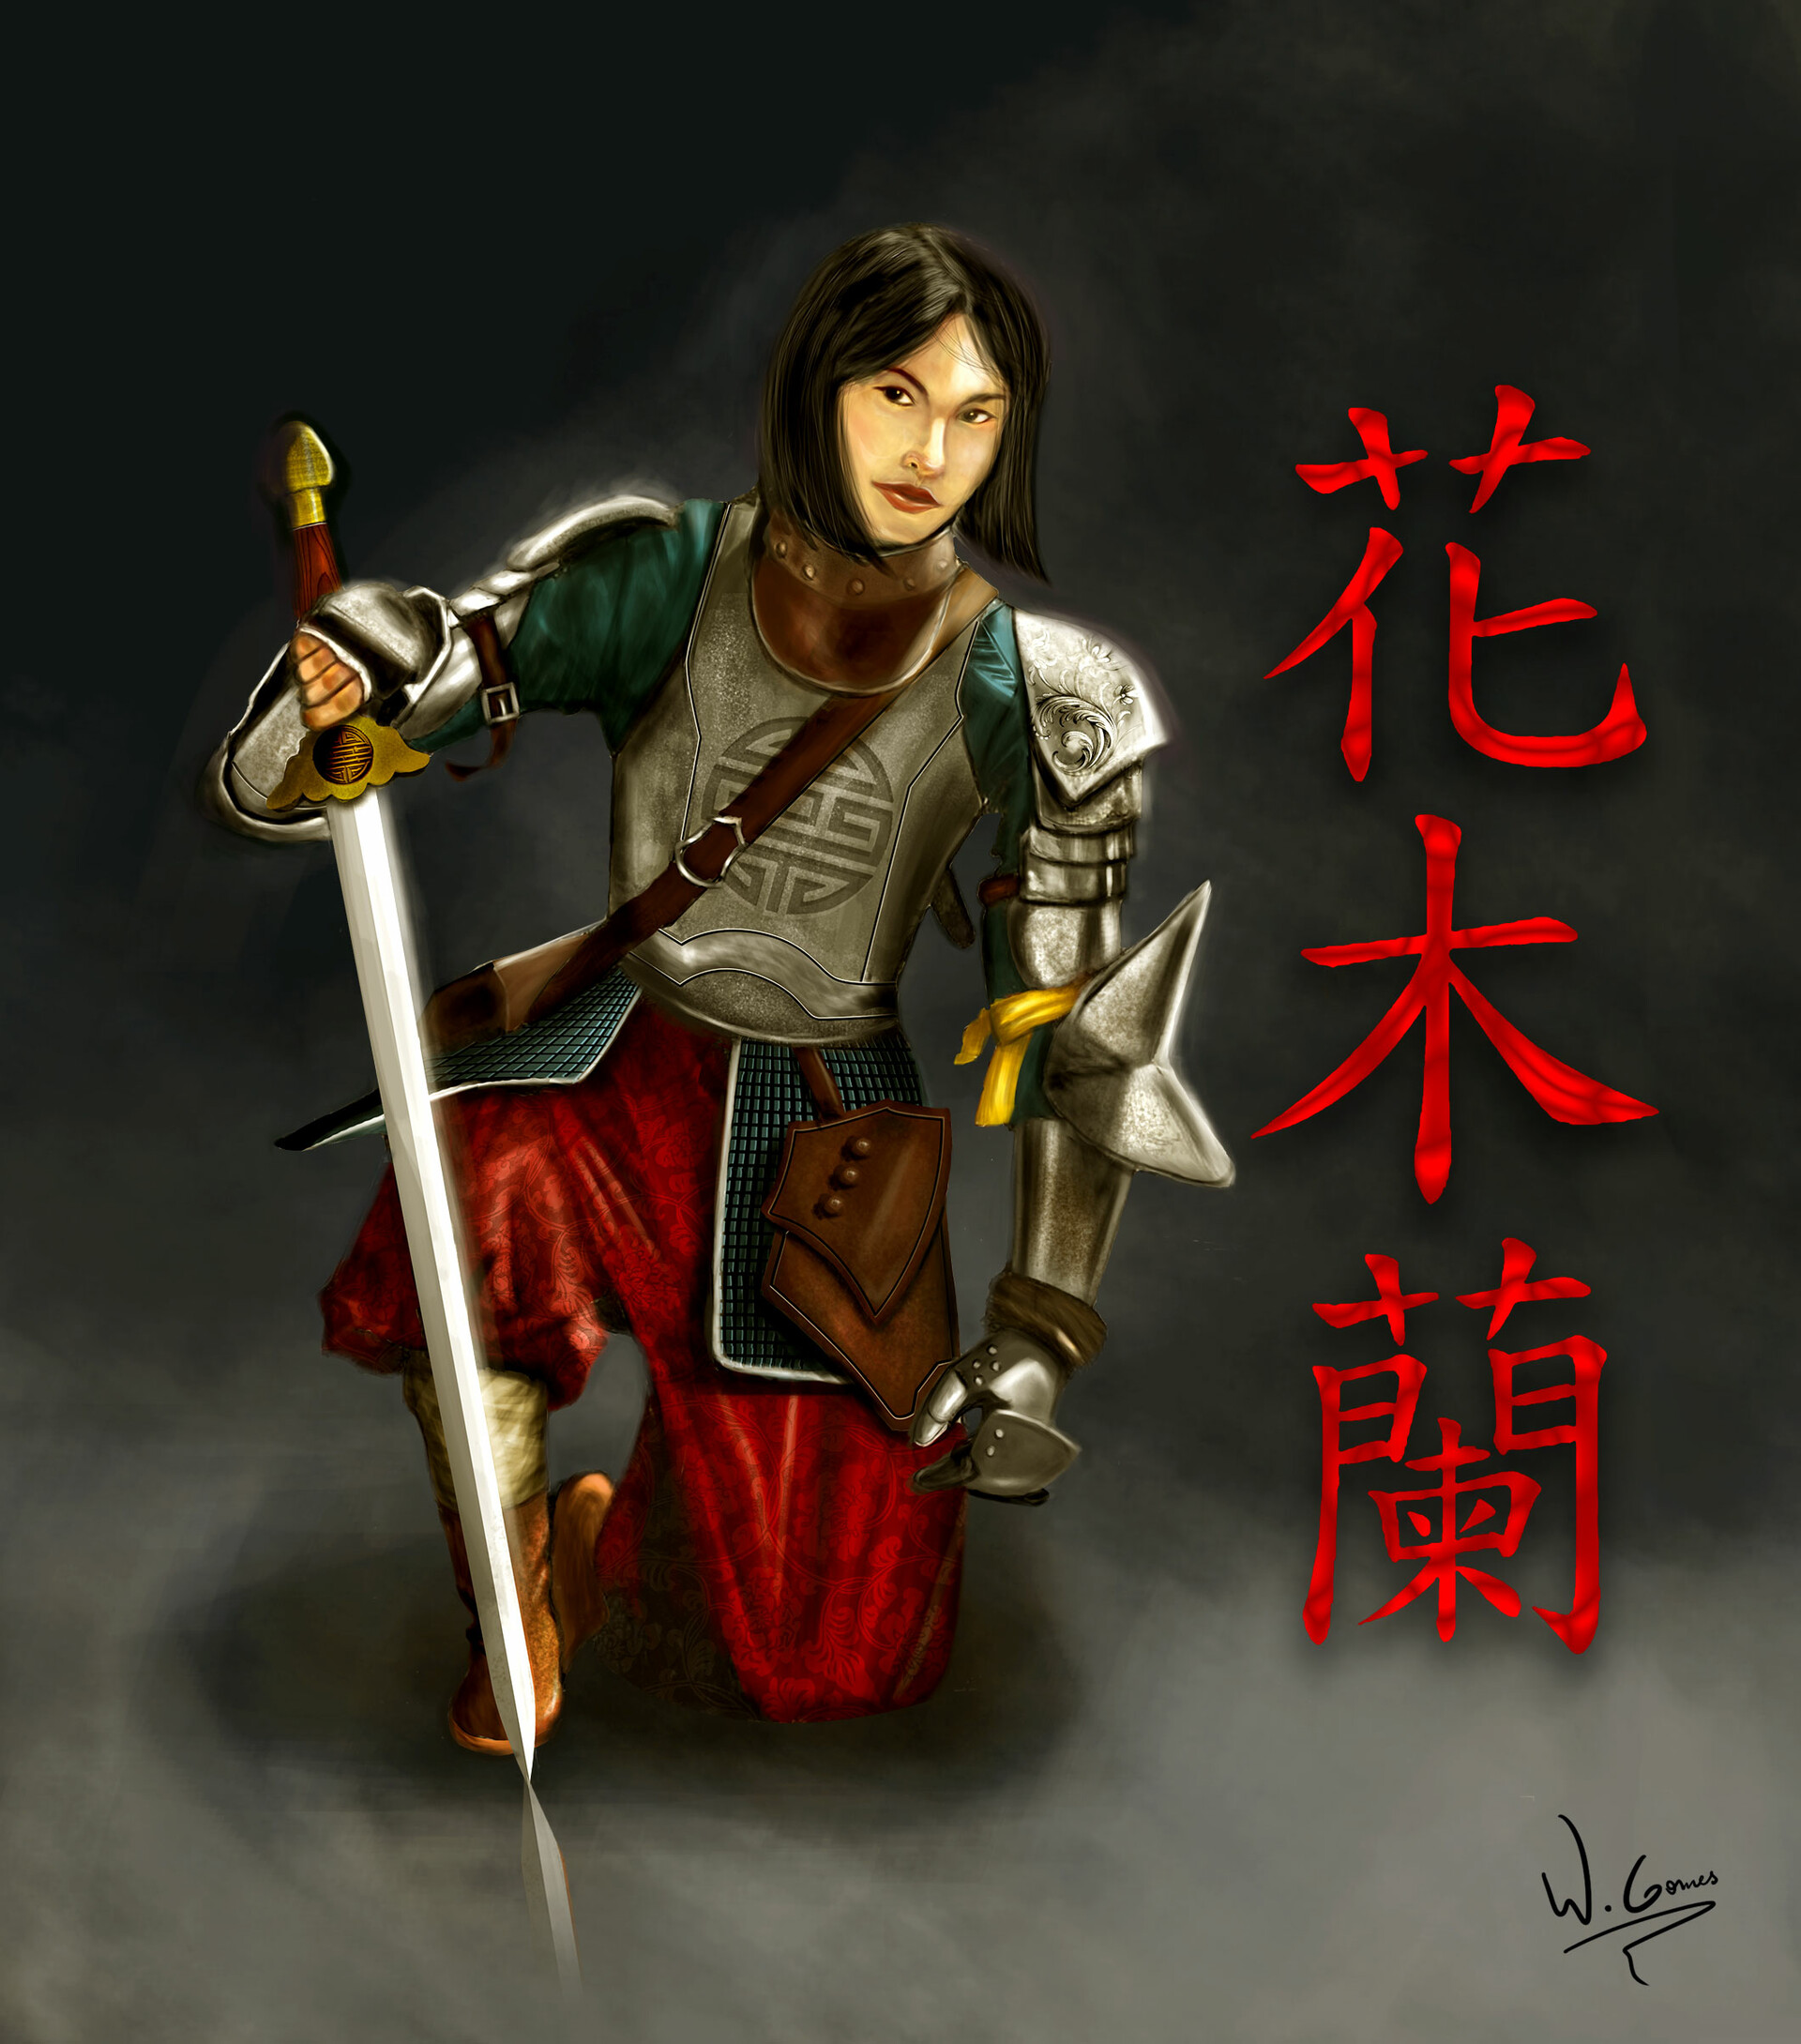 Hua Mulan from Mulan